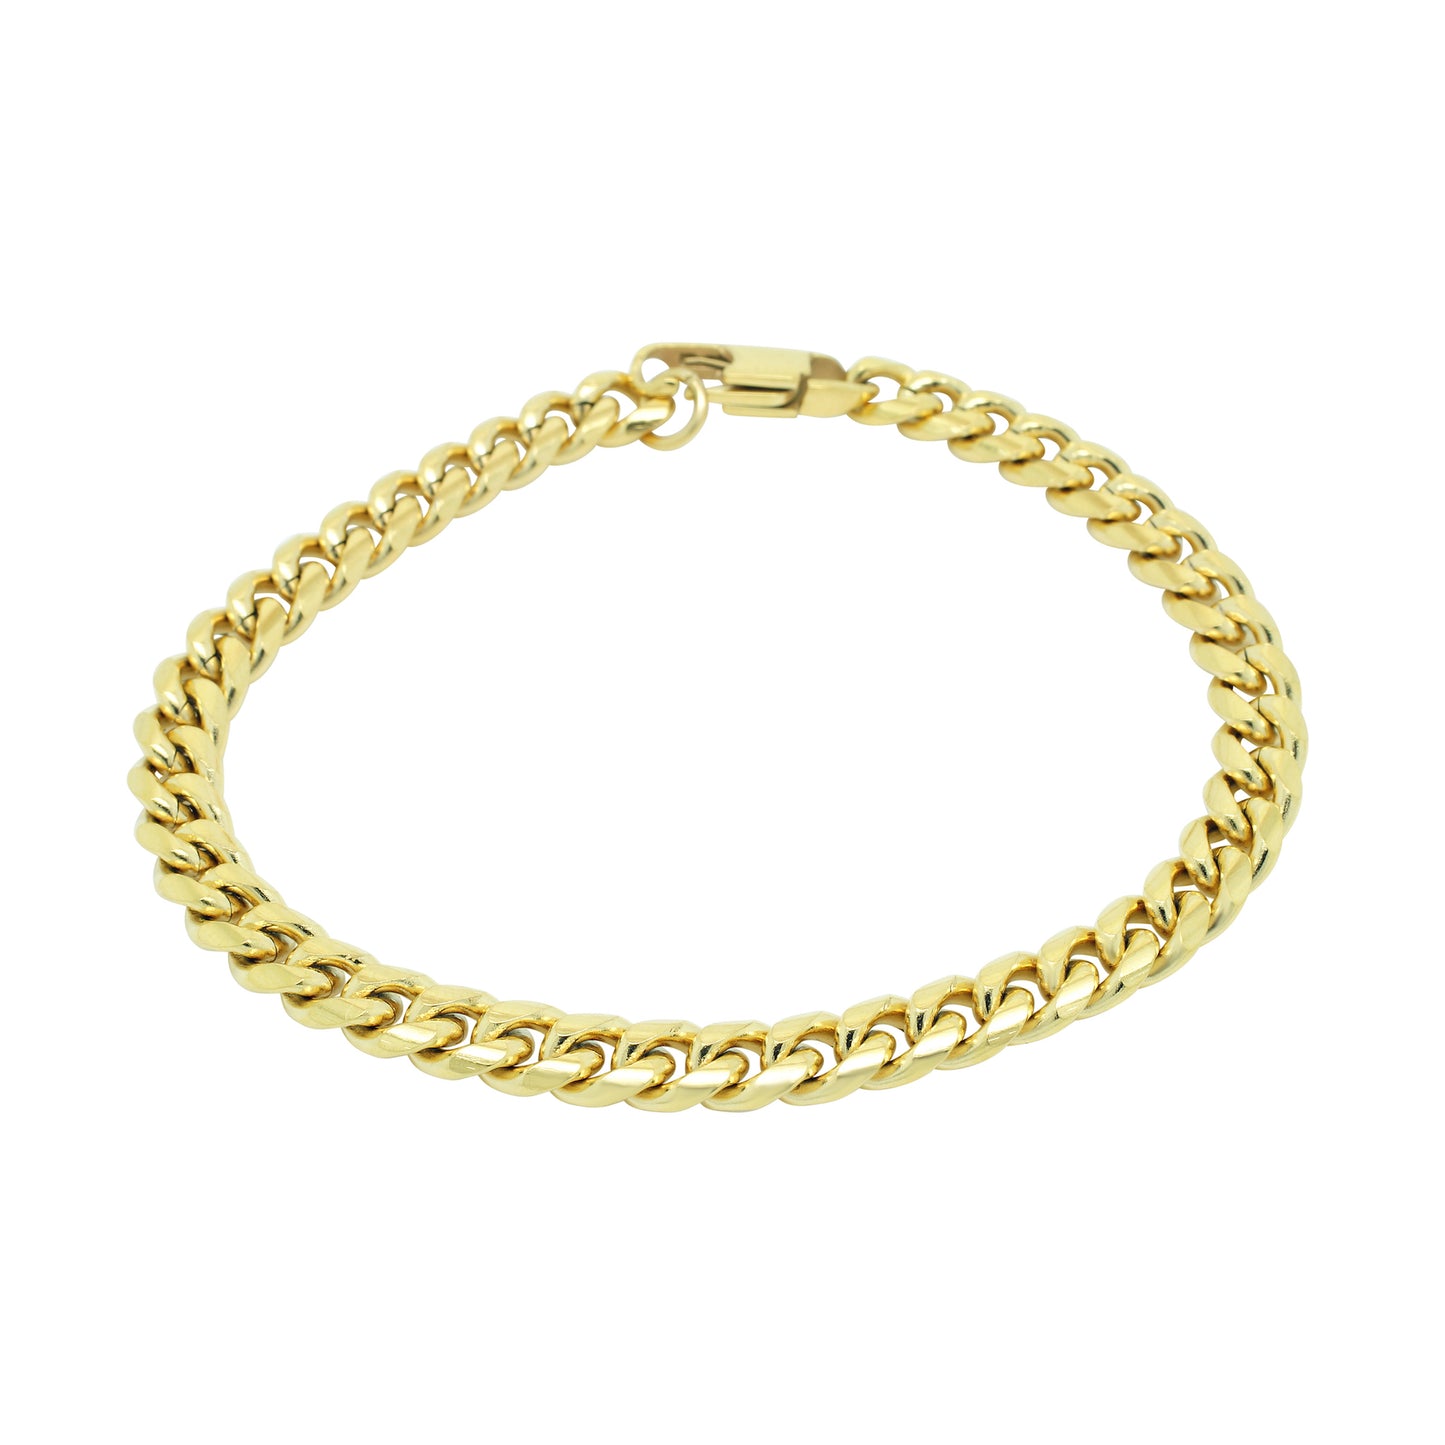 8mm Chain Bracelet - Gold